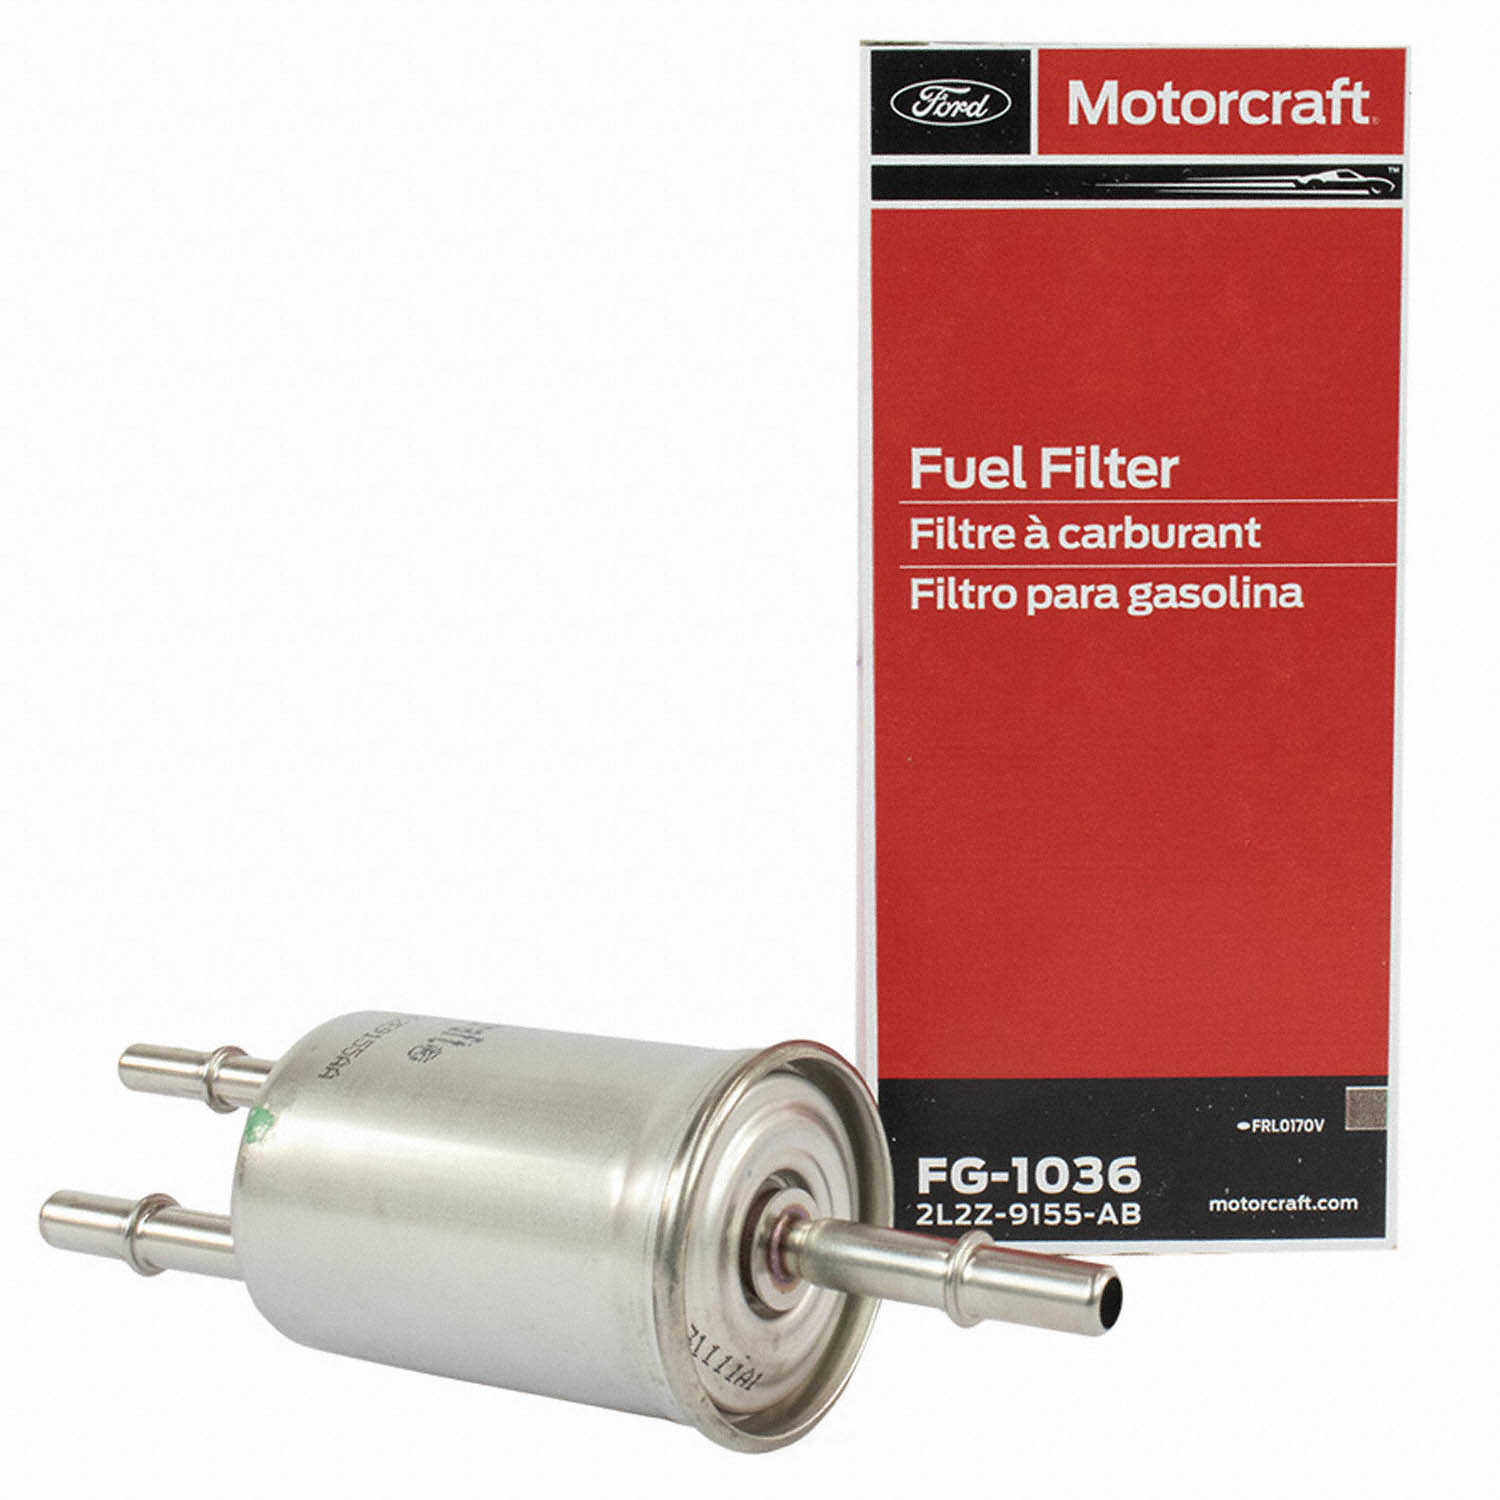 MOTORCRAFT - Fuel Filter - MOT FG-1036